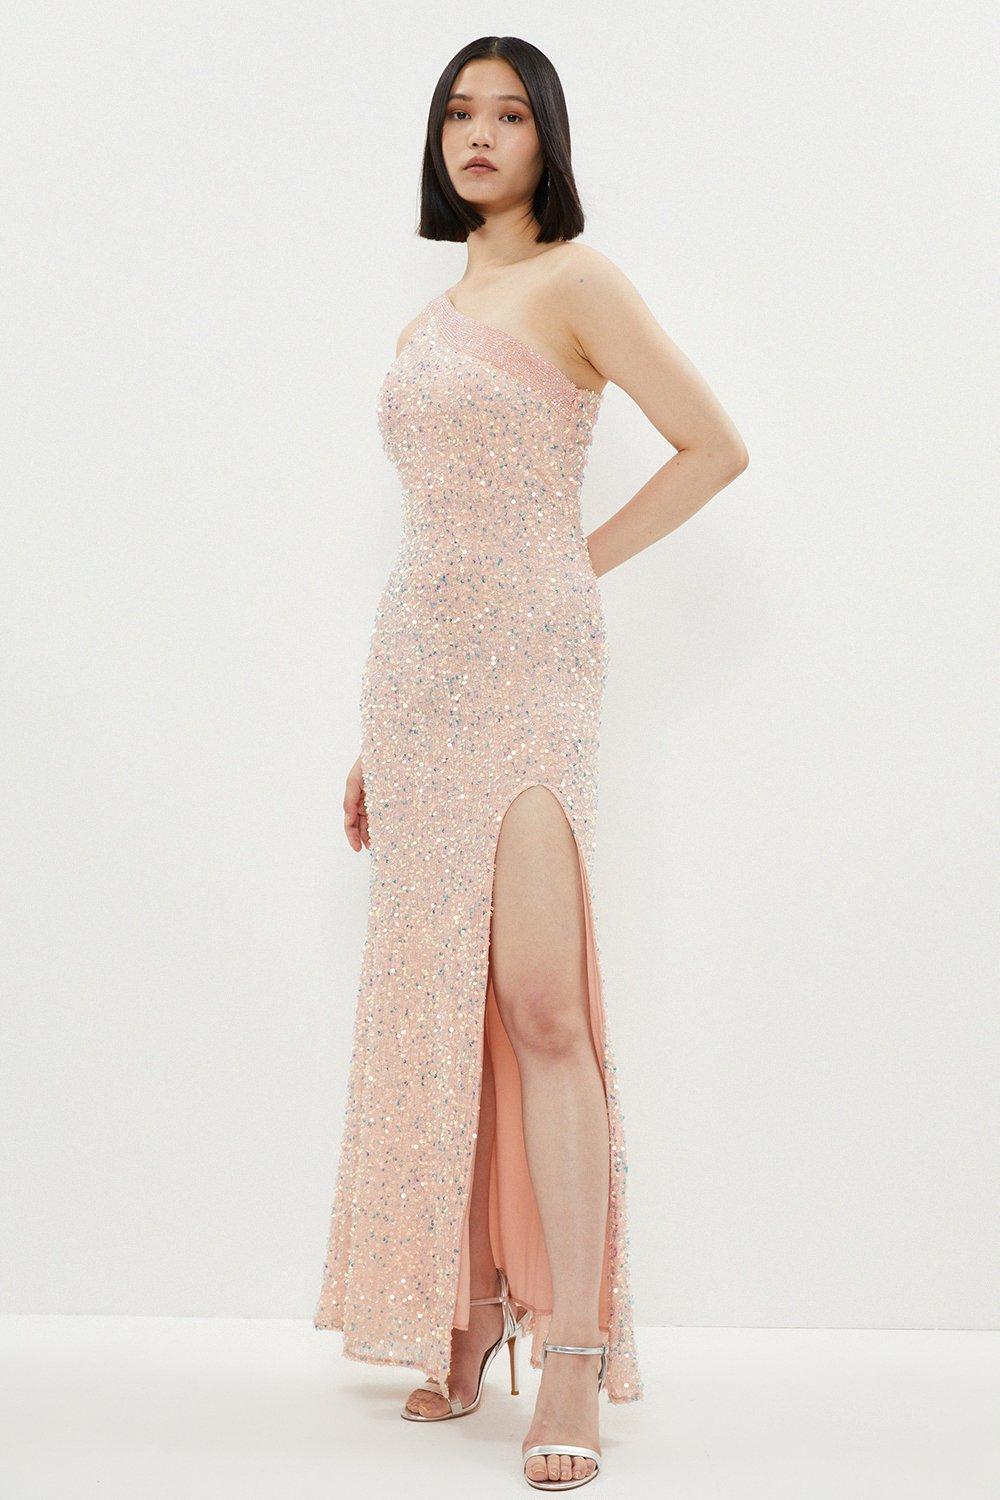 All Over Embellished One Shoulder Maxi Dress - Pink